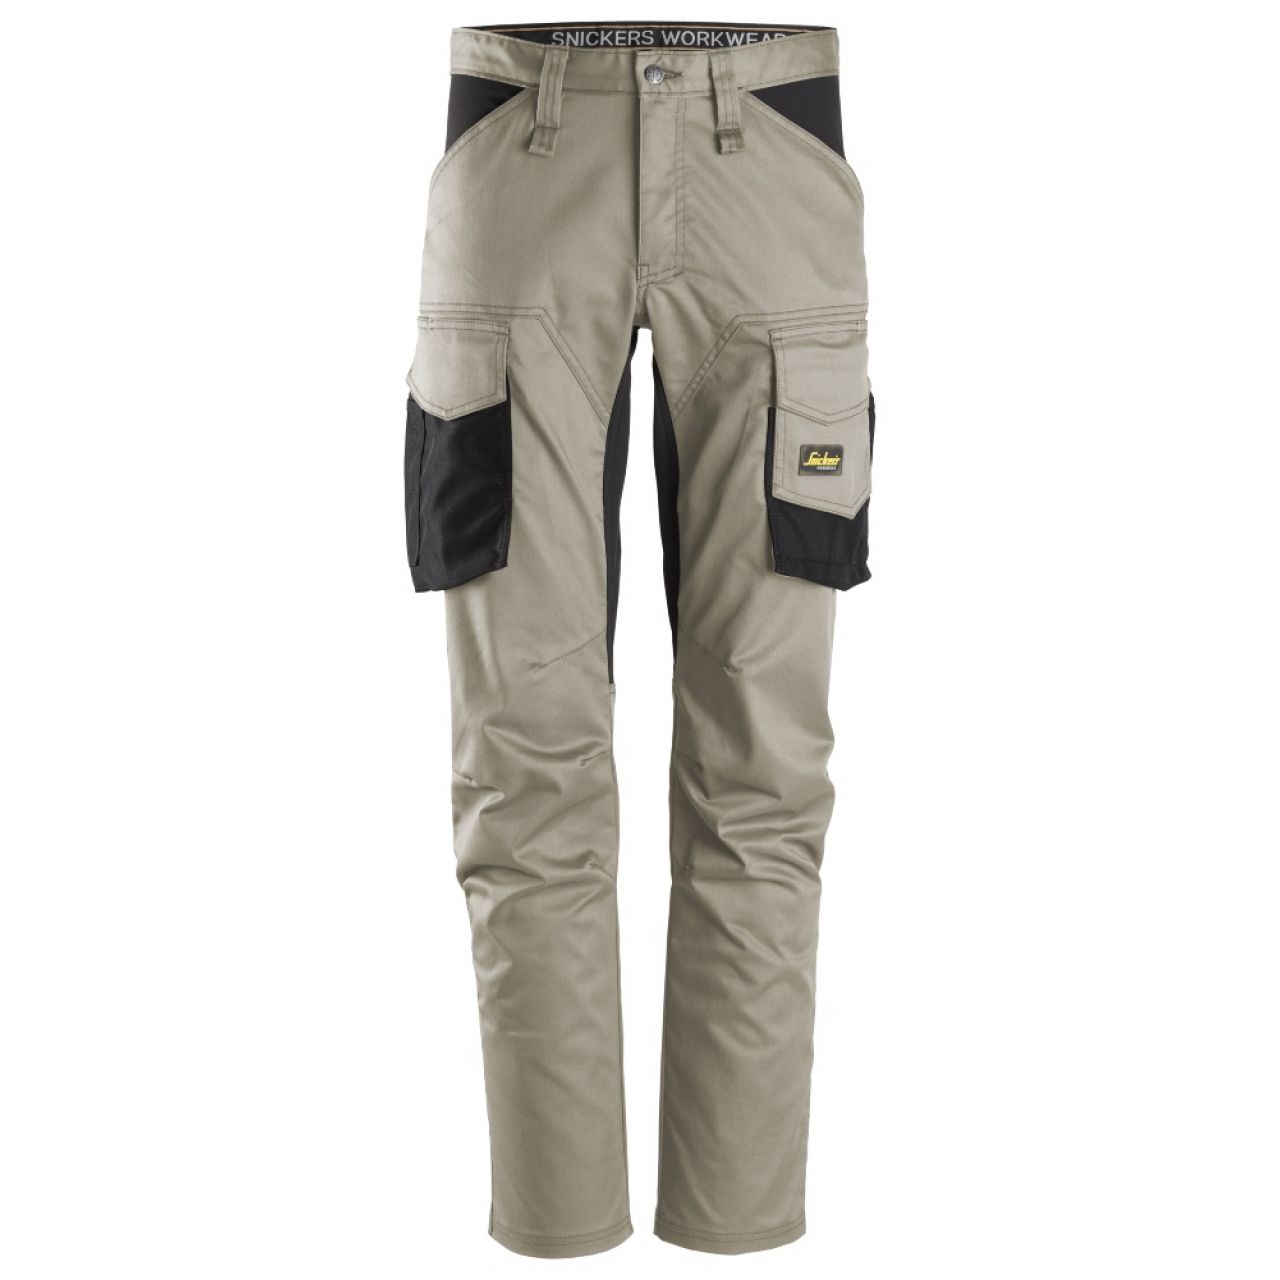 6803 Pantalones largos de trabajo elásticos sin bolsillos para las rodilleras AllroundWork beige-negro talla 56